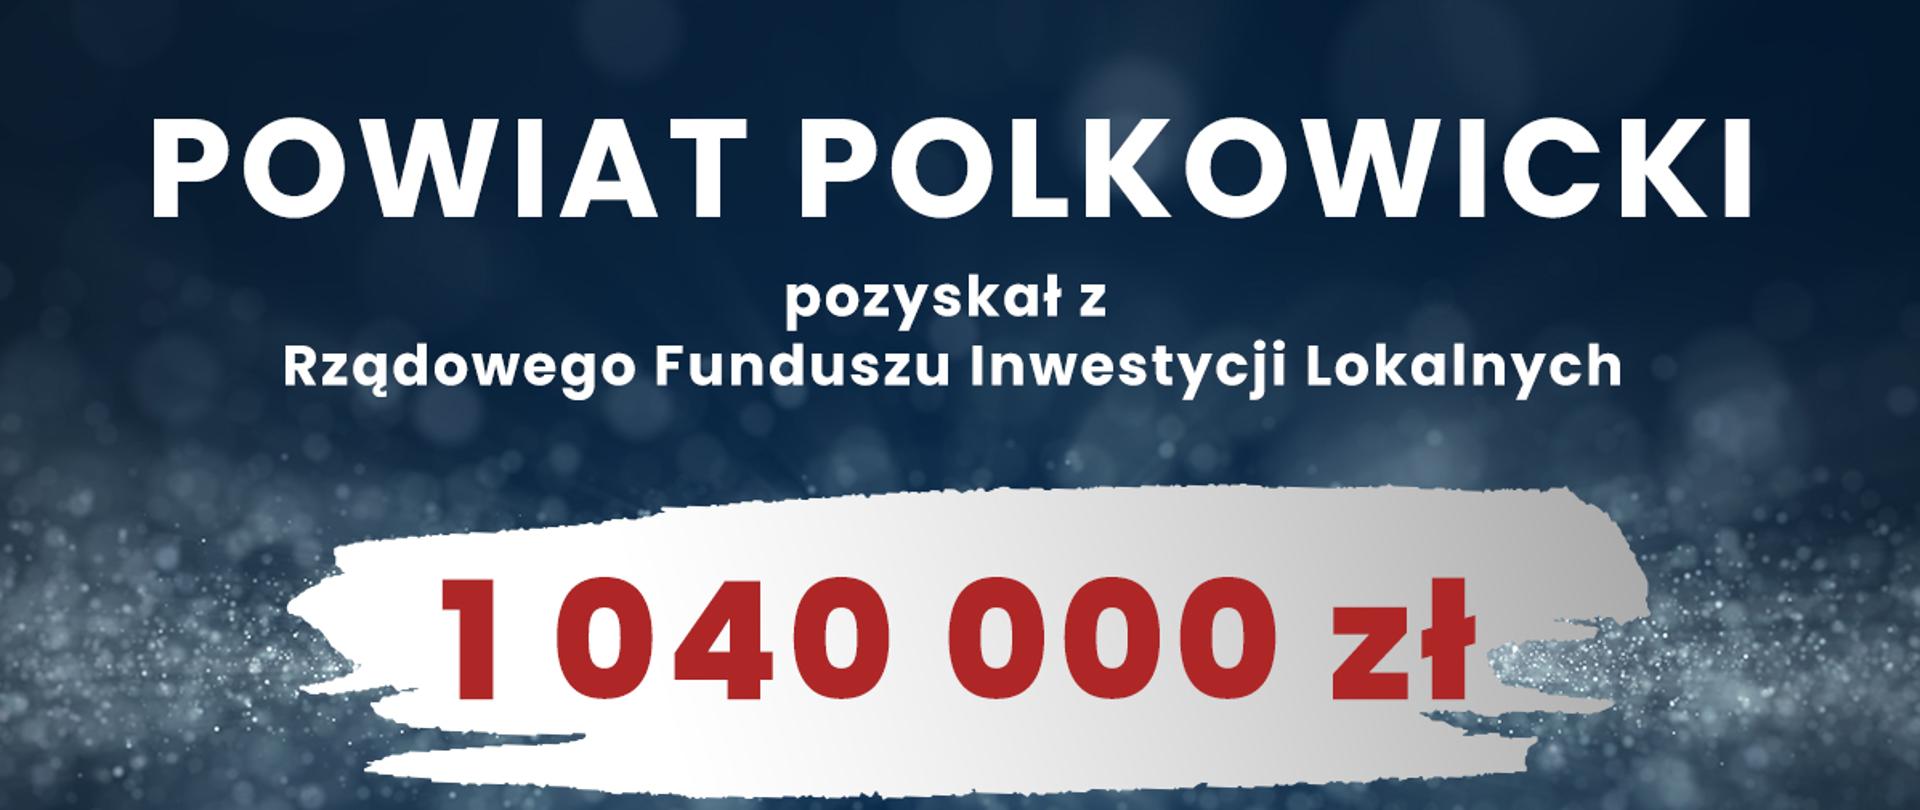 Na planszy znajduje się tekst z informacją o pozyskanej kwocie 1 040 000 zł z Rządowego Funduszu Inwestycji Lokalnych oraz informację na co zostaną przeznaczone. Na dole planszy w prawym rogu znajduje się logo RFIL oraz logo Powiatu Polkowickiego.